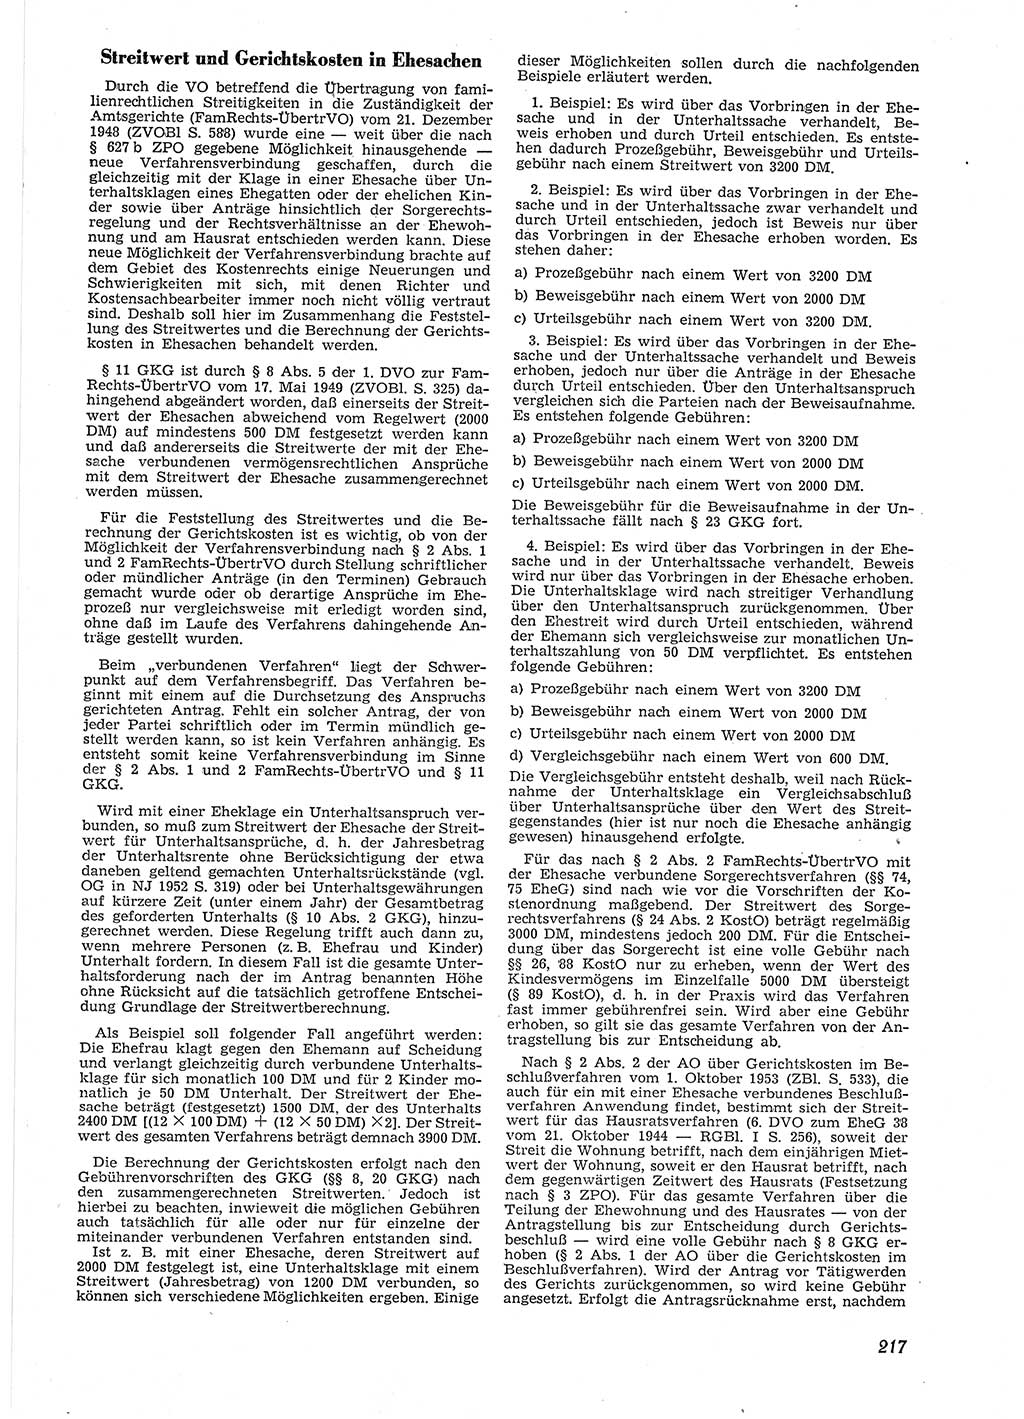 Neue Justiz (NJ), Zeitschrift für Recht und Rechtswissenschaft [Deutsche Demokratische Republik (DDR)], 9. Jahrgang 1955, Seite 217 (NJ DDR 1955, S. 217)